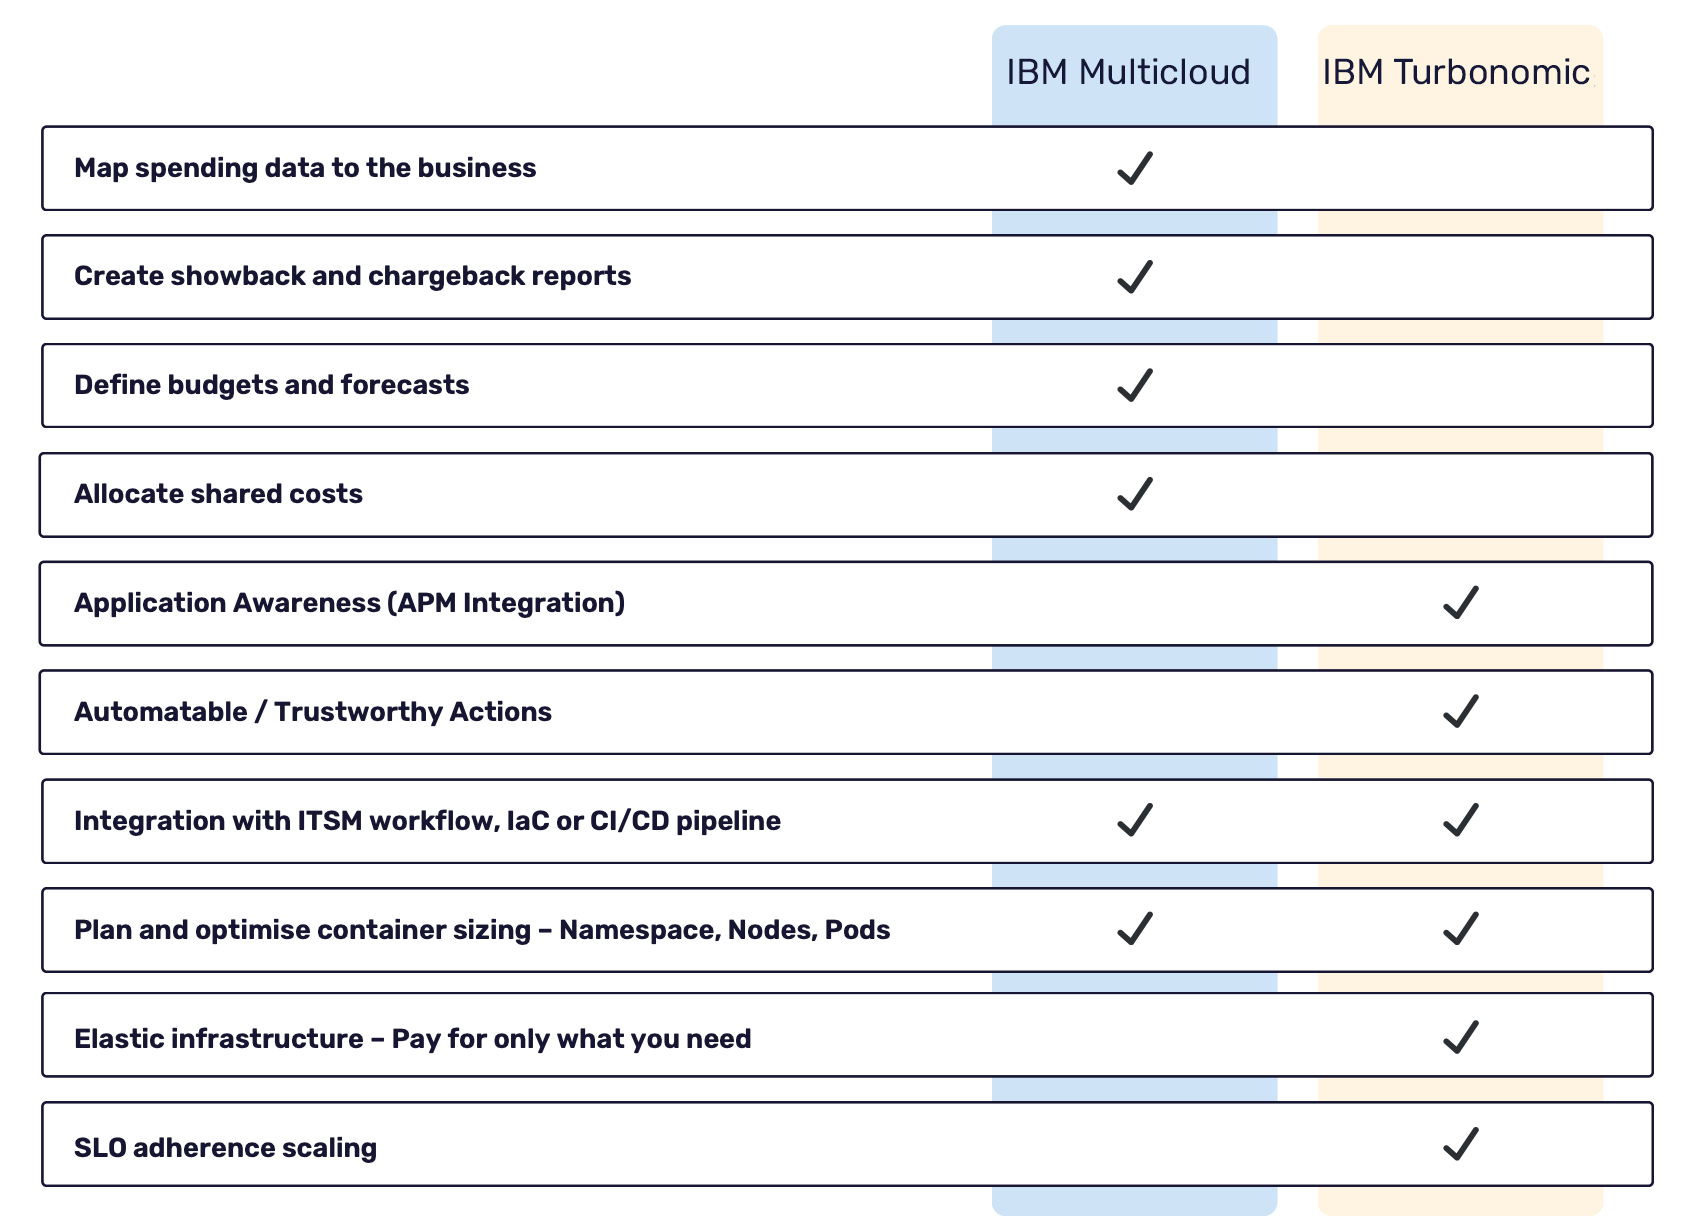 IBM Multicloud & IBM Turbonomic comparison